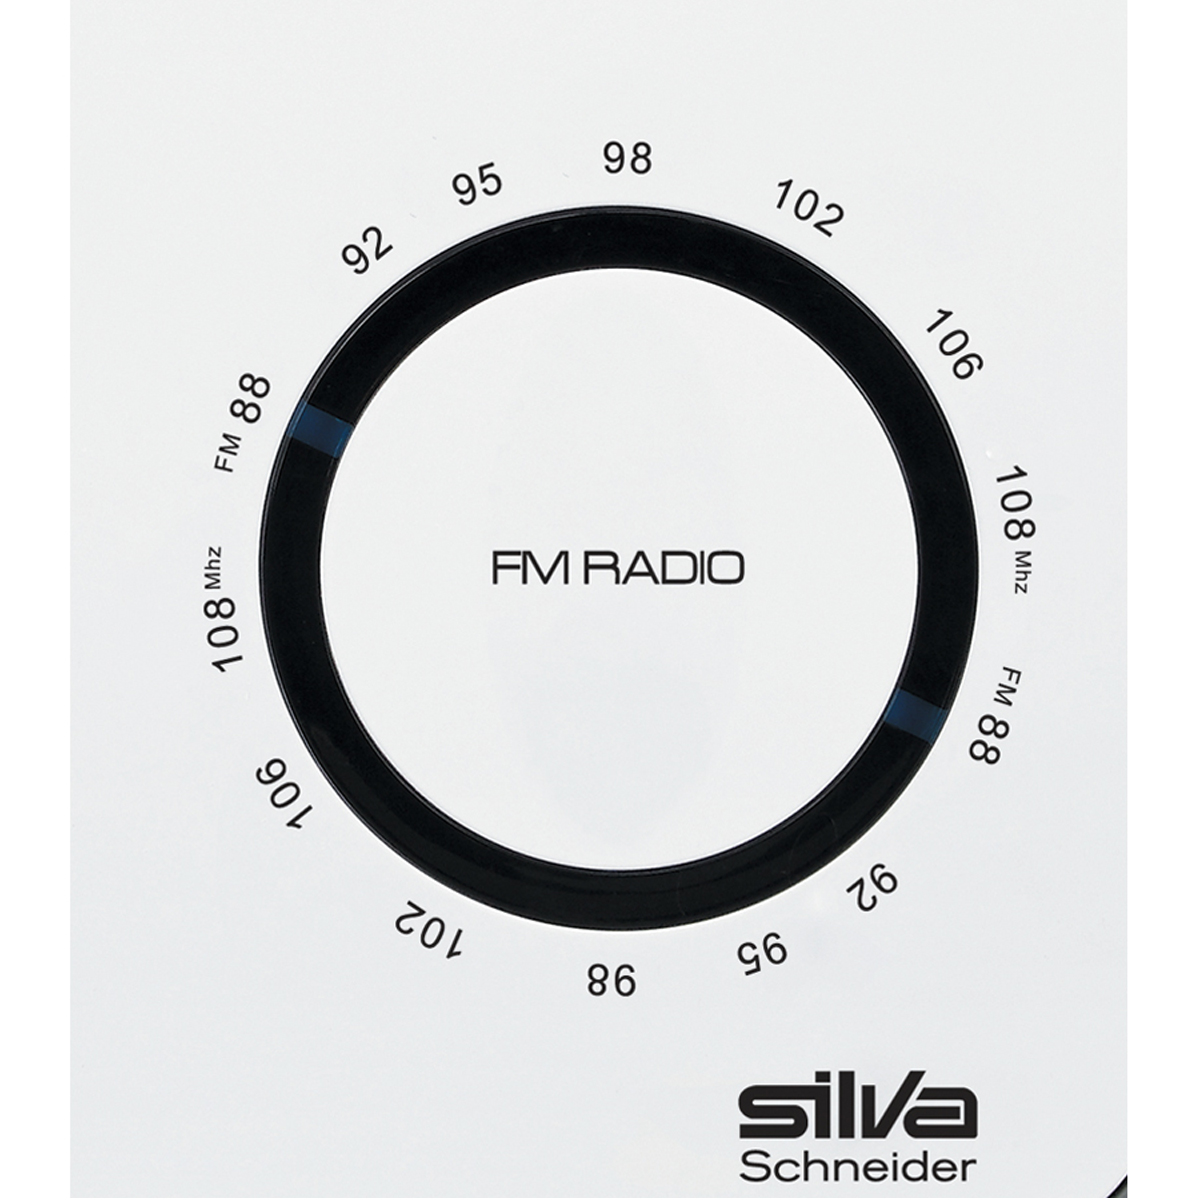 SILVA-SCHNEIDER M 295 FM, weiß/grau Radio